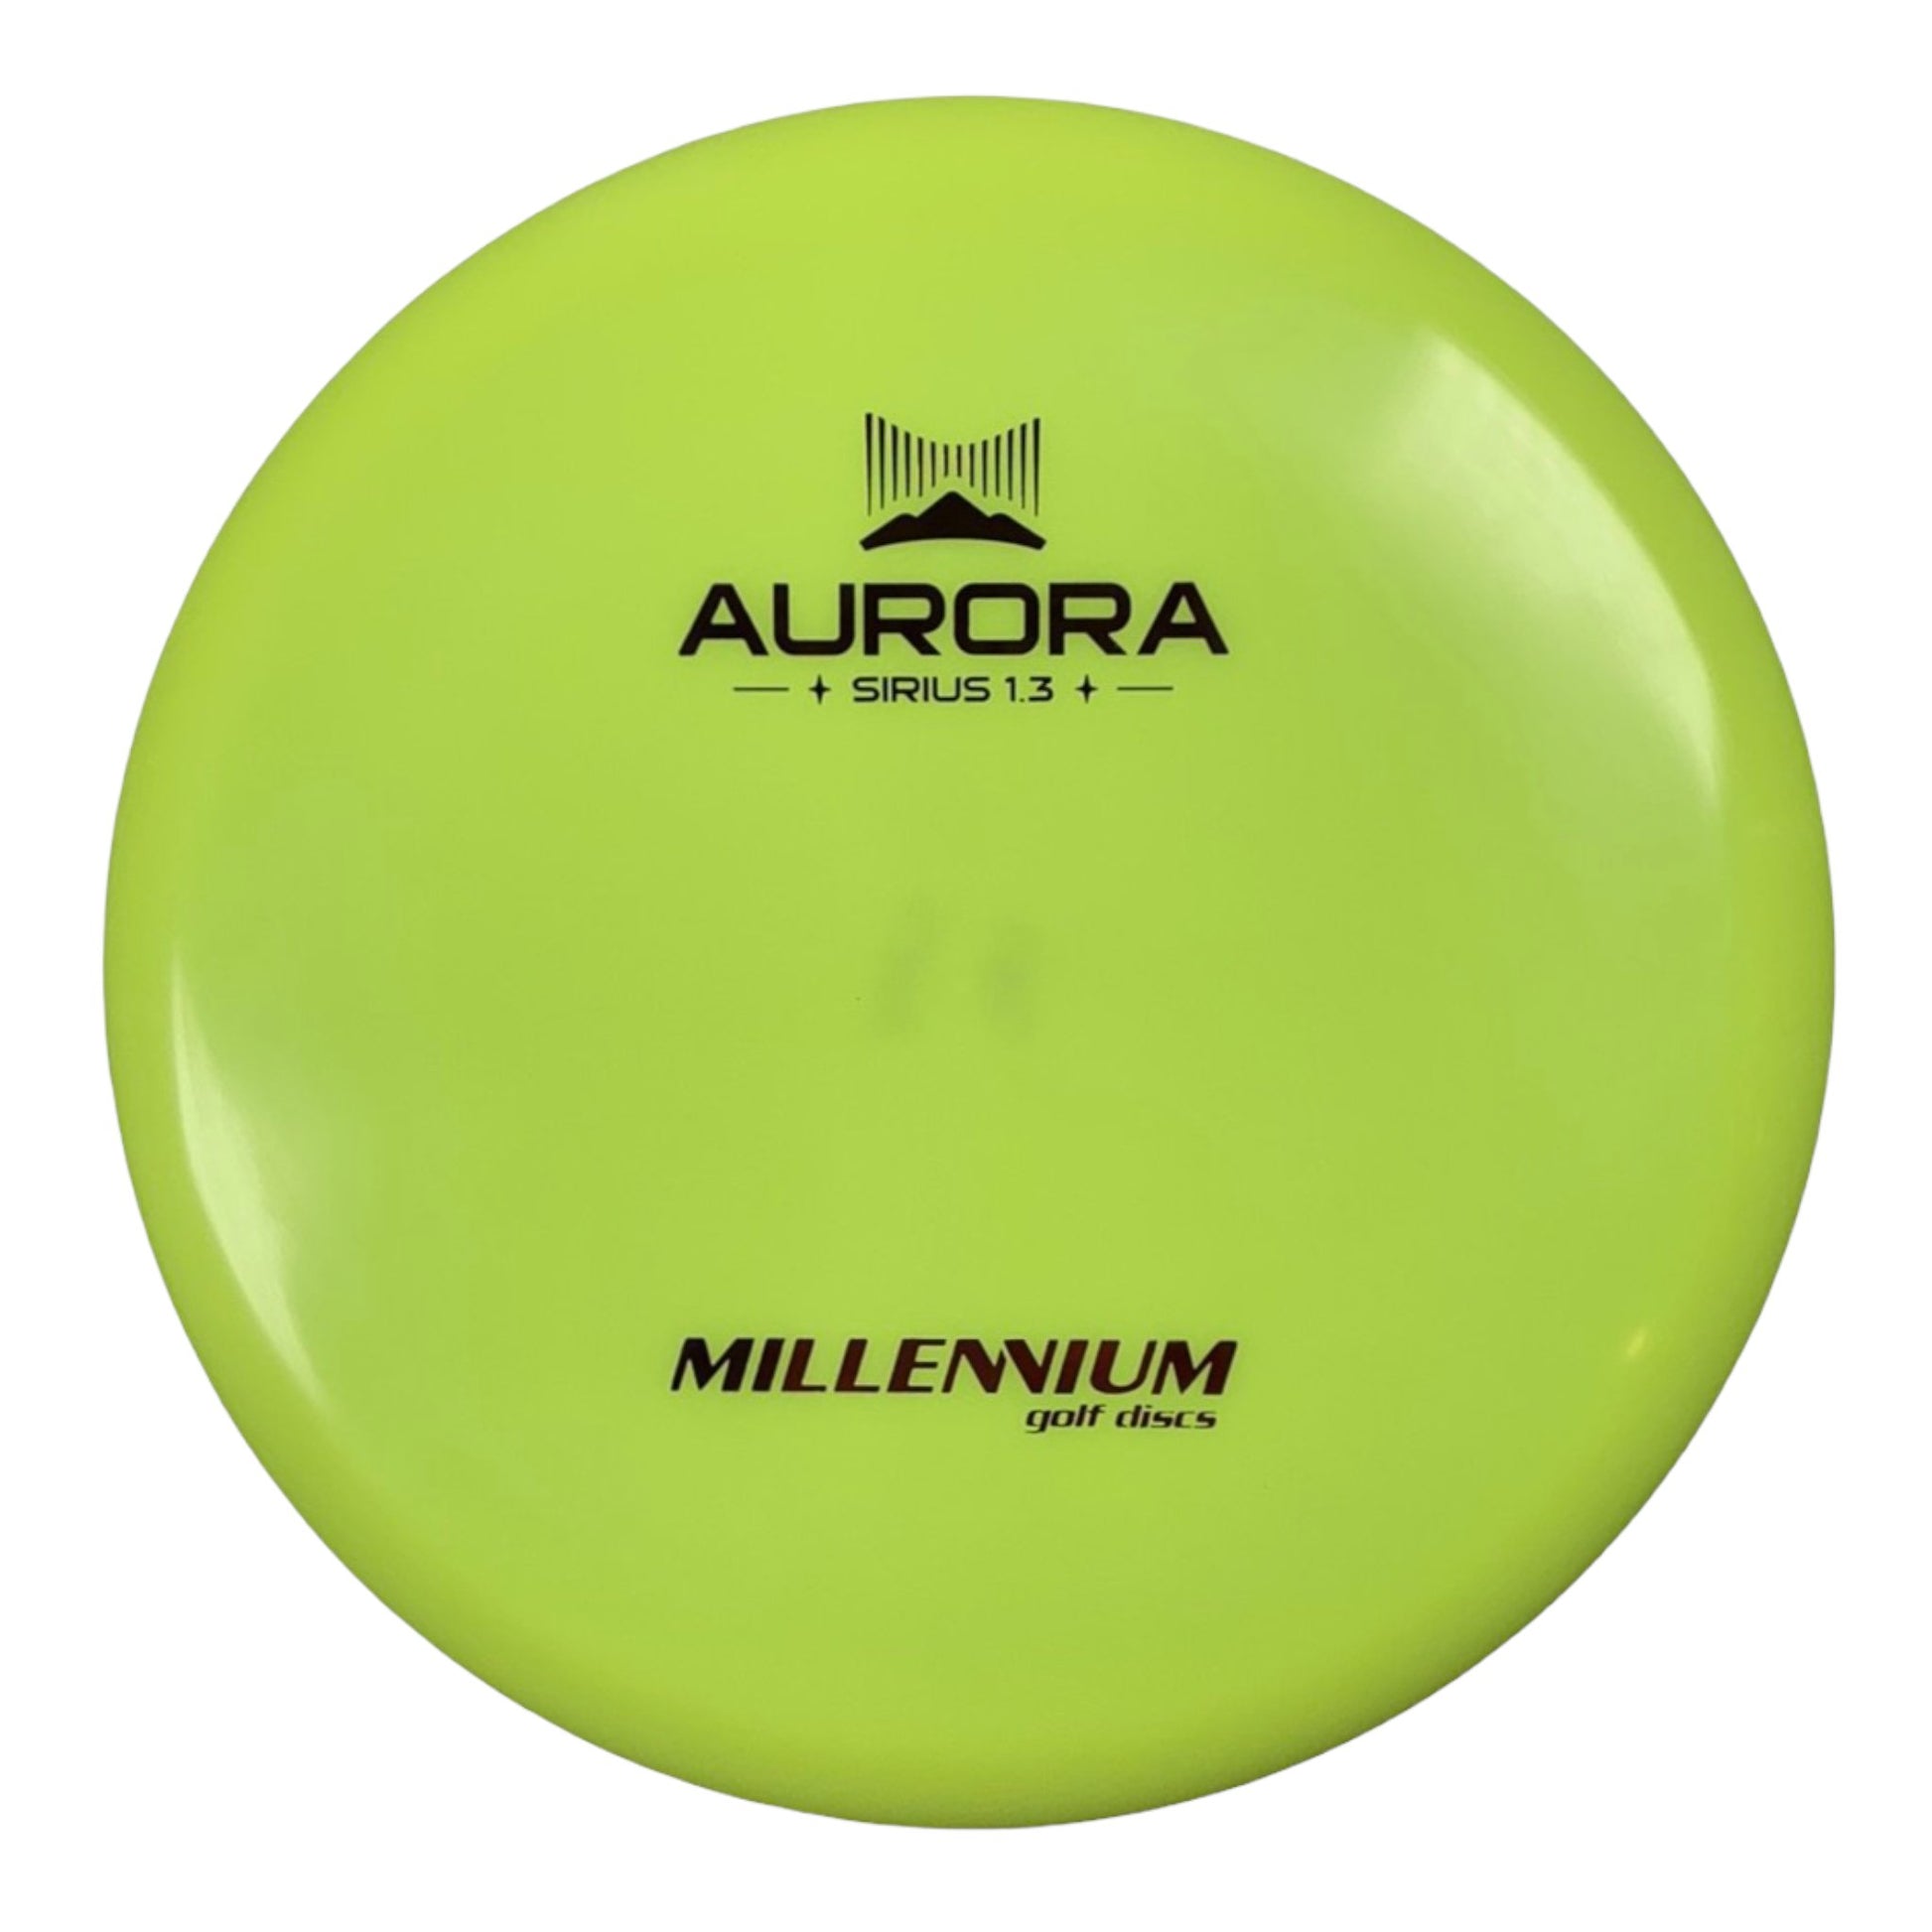 Millennium Golf Discs Aurora MS | Sirius | Neon/Red 172g Disc Golf